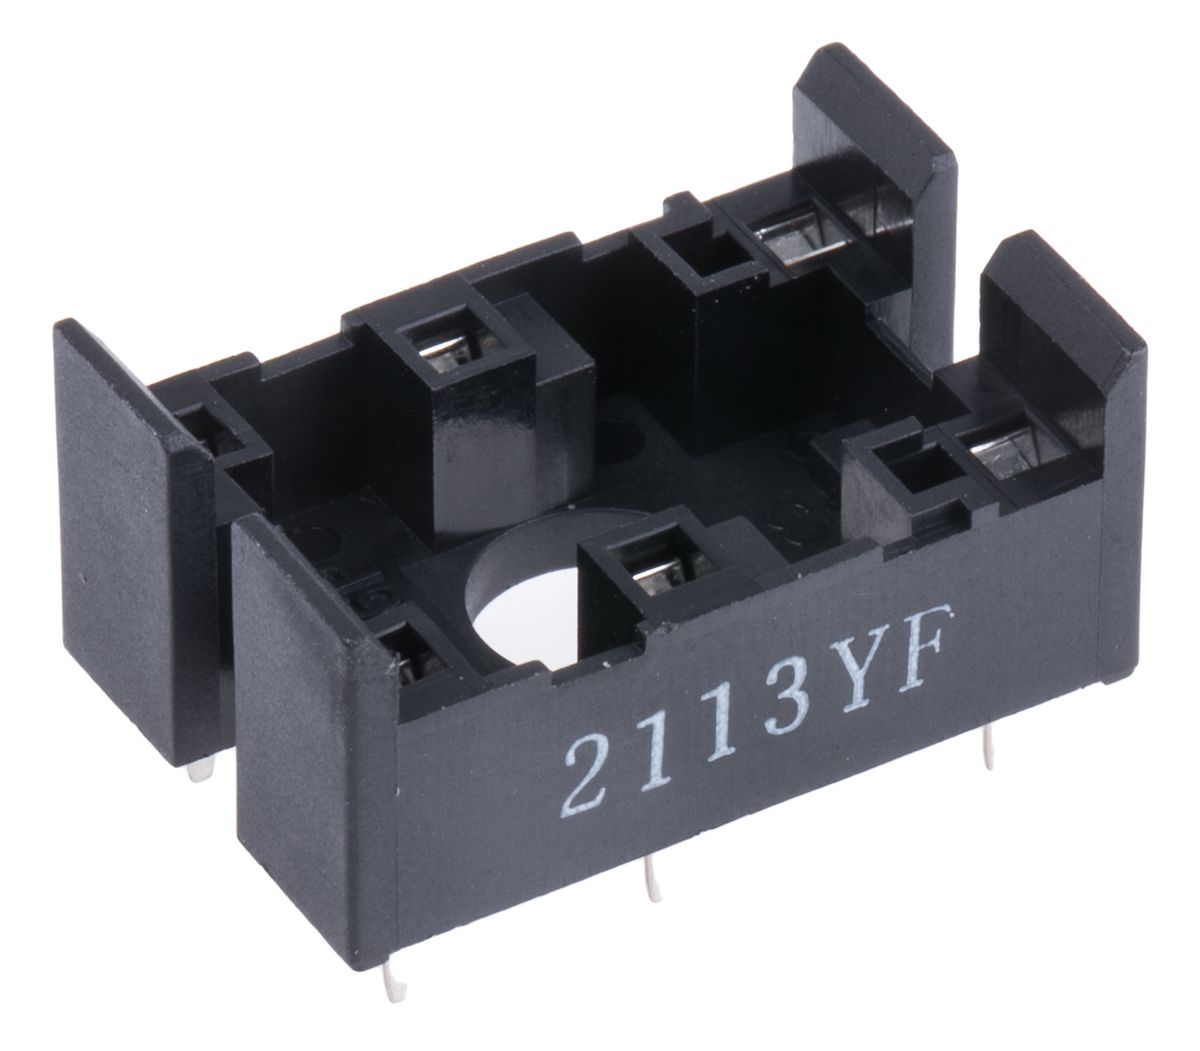 Omron Relay Socket for use with G6C(U)-1114P-US-P6C, G6C(U)-1117P-US-P6C, G6C(U)-2114P-US-P6C, G6C(U)-2117P-US-P6C 6